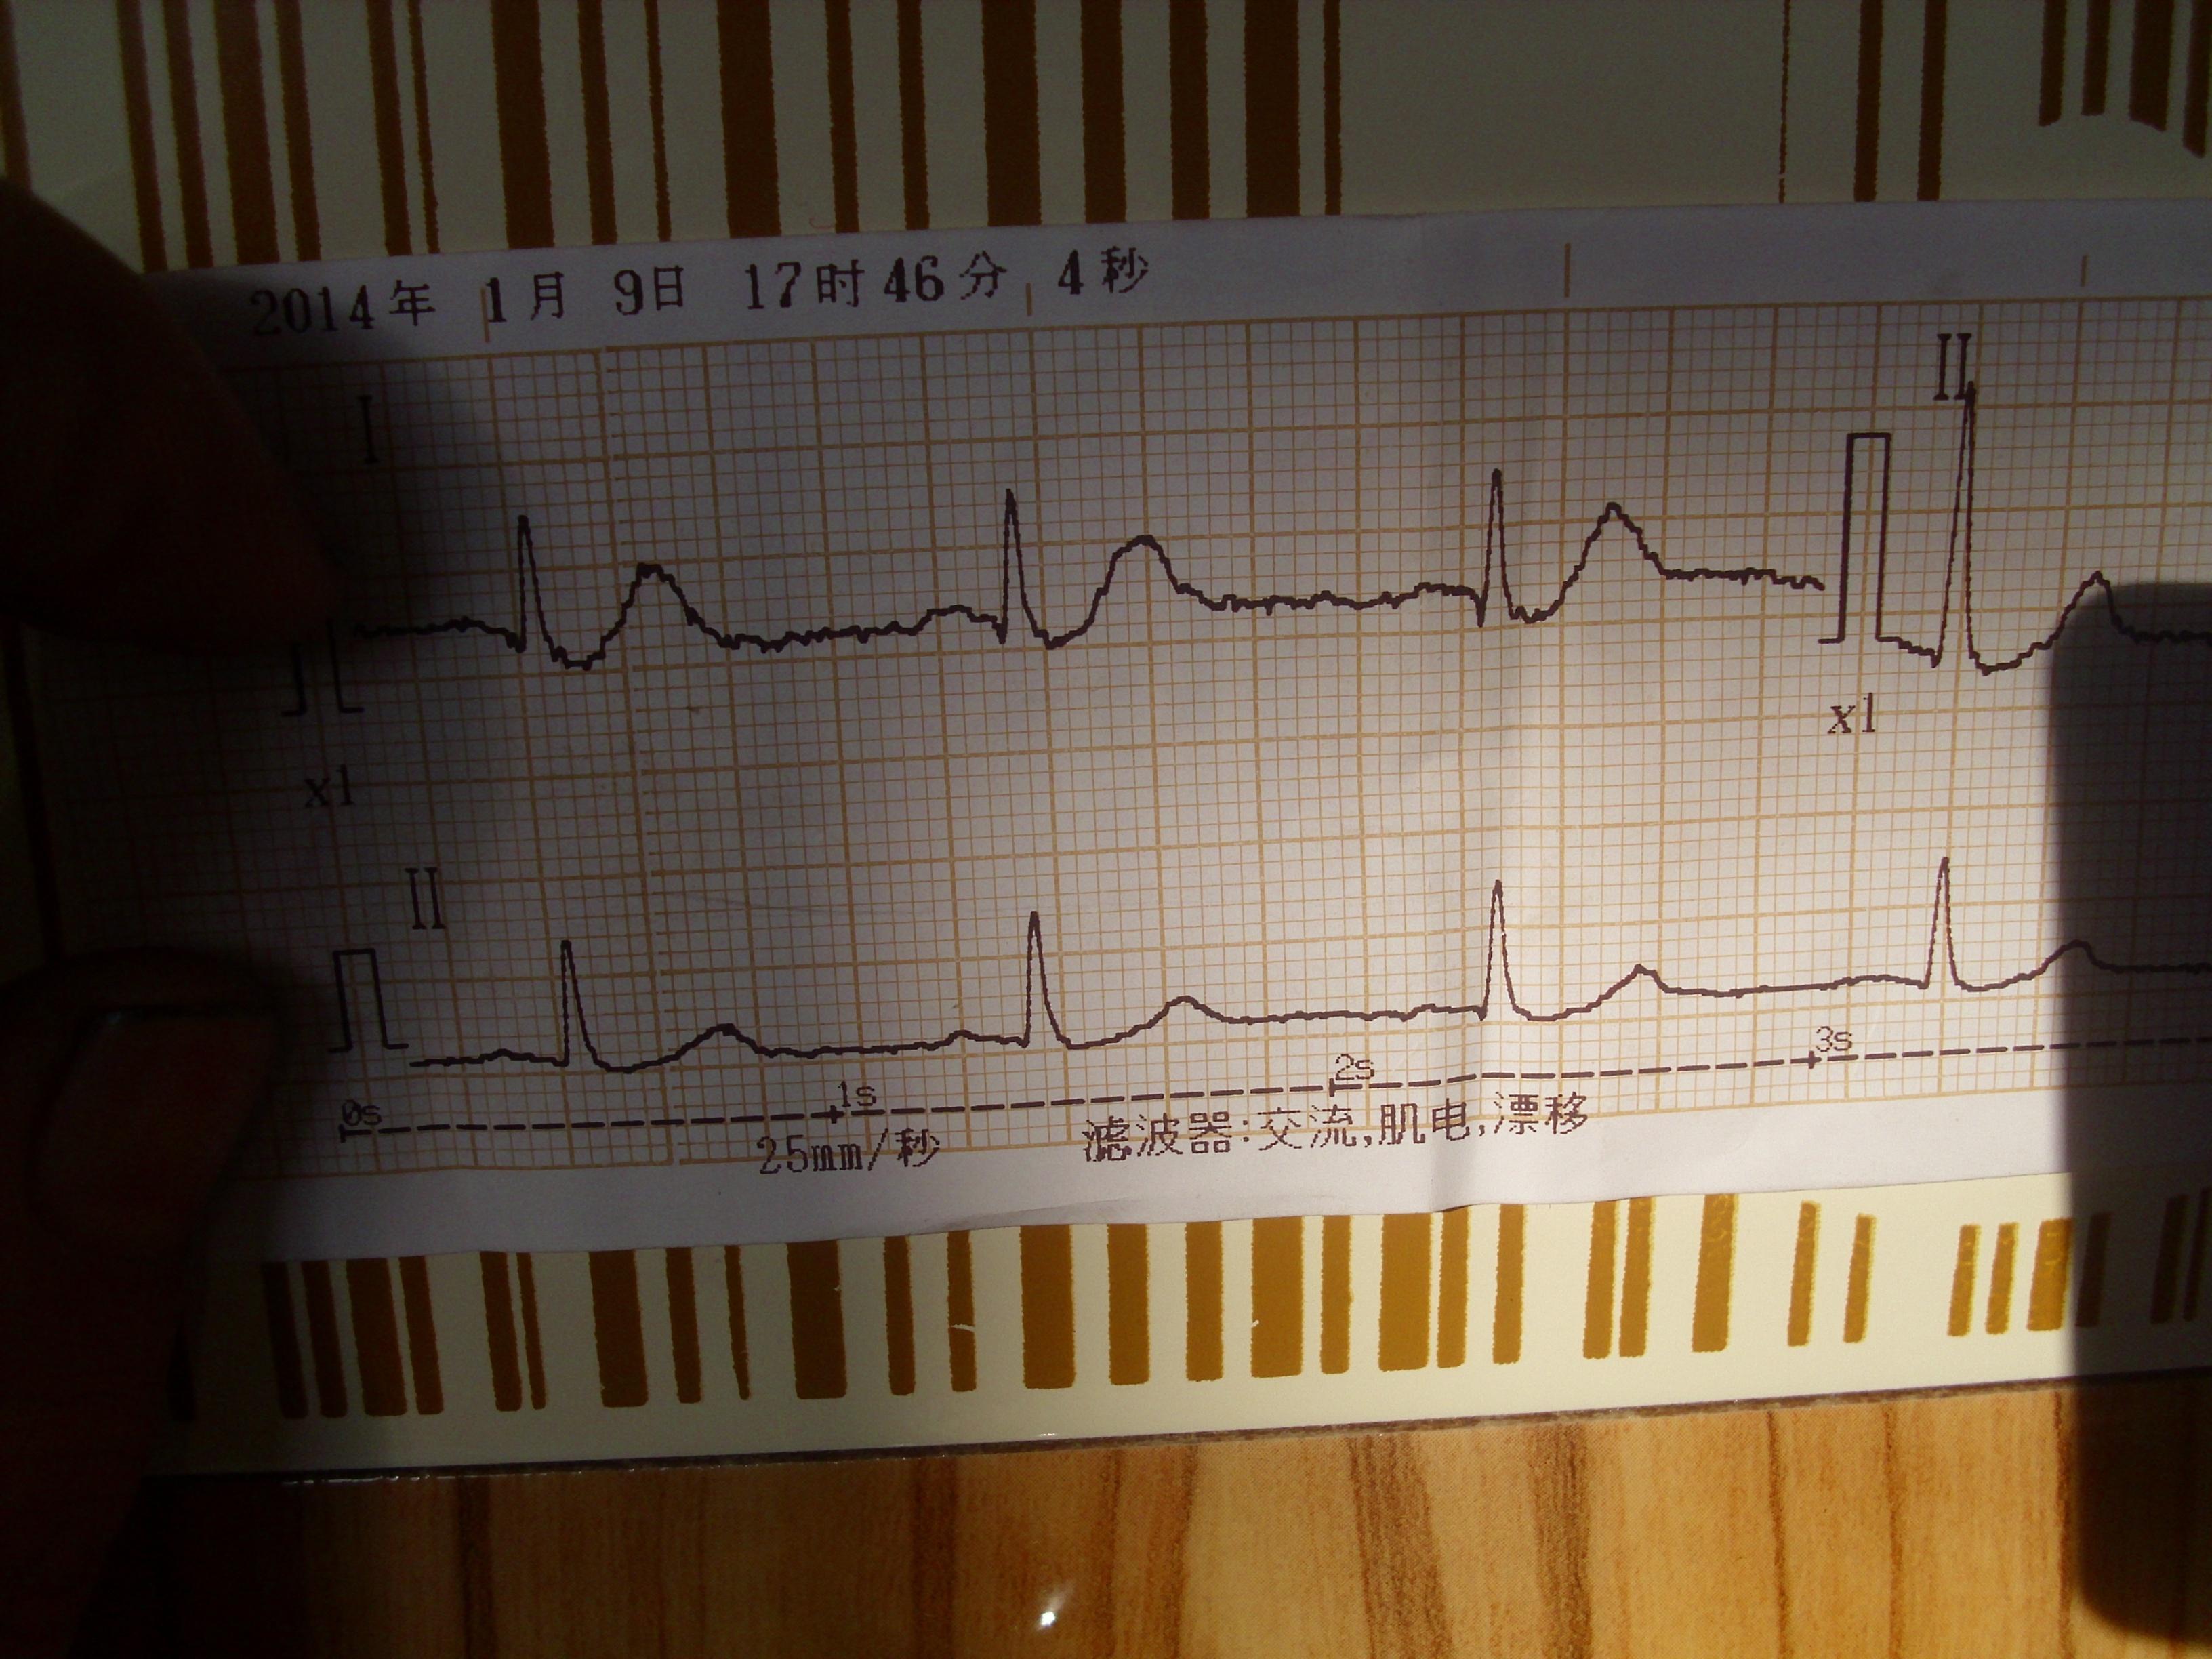 一例典型的心电图,请大家看看是不是心梗超急性期